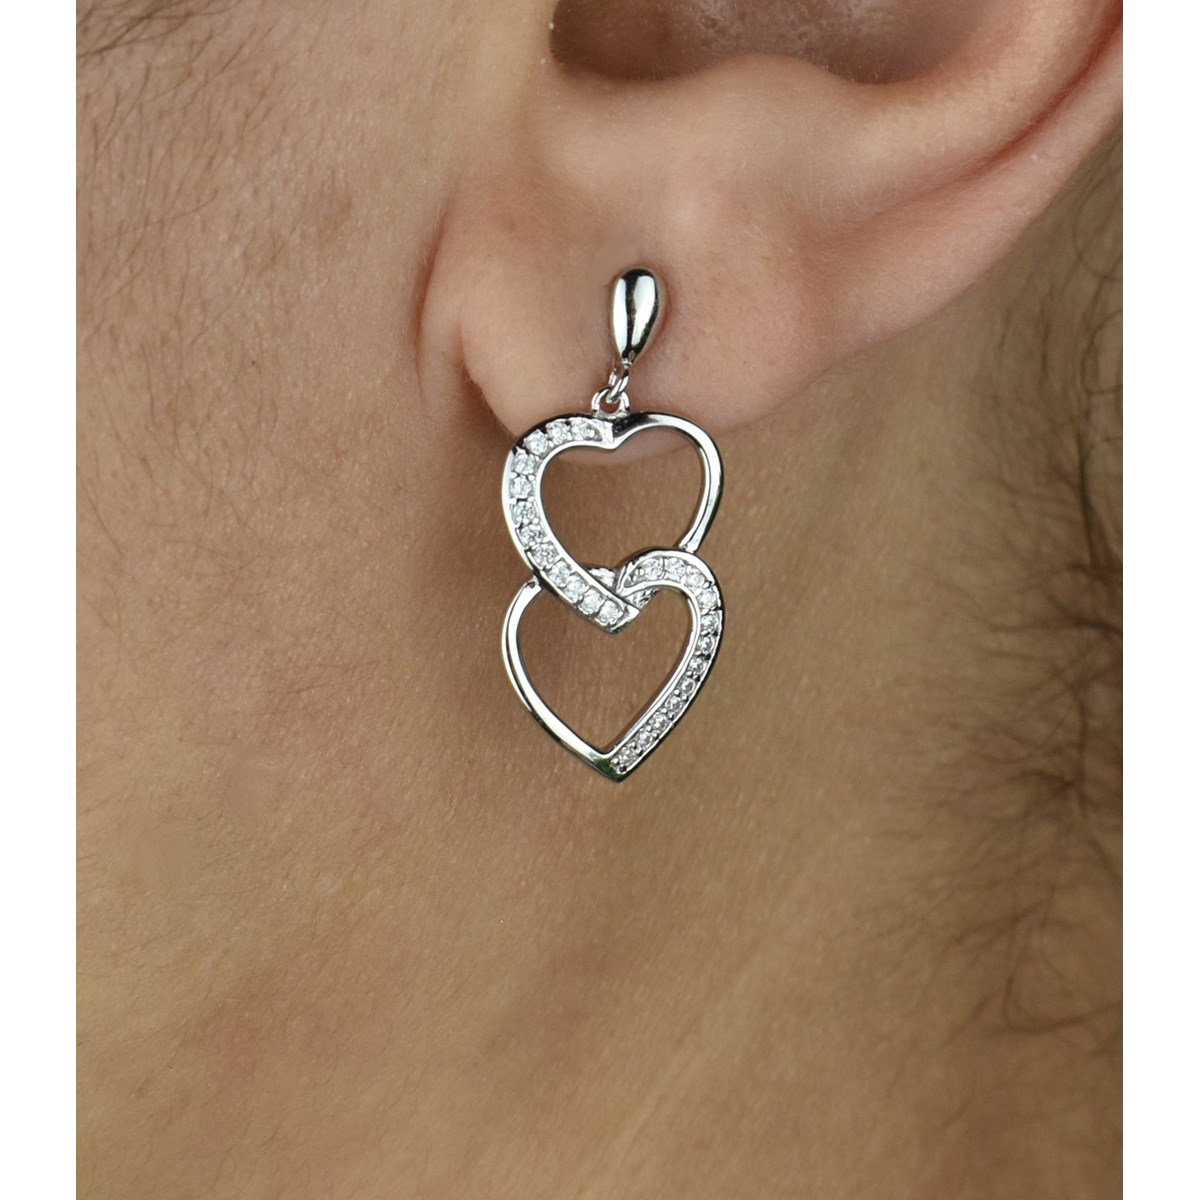 Boucles d'oreilles 2 coeurs superposés sertis d'oxydes de zirconium Argent 925 Rhodié - vue 3